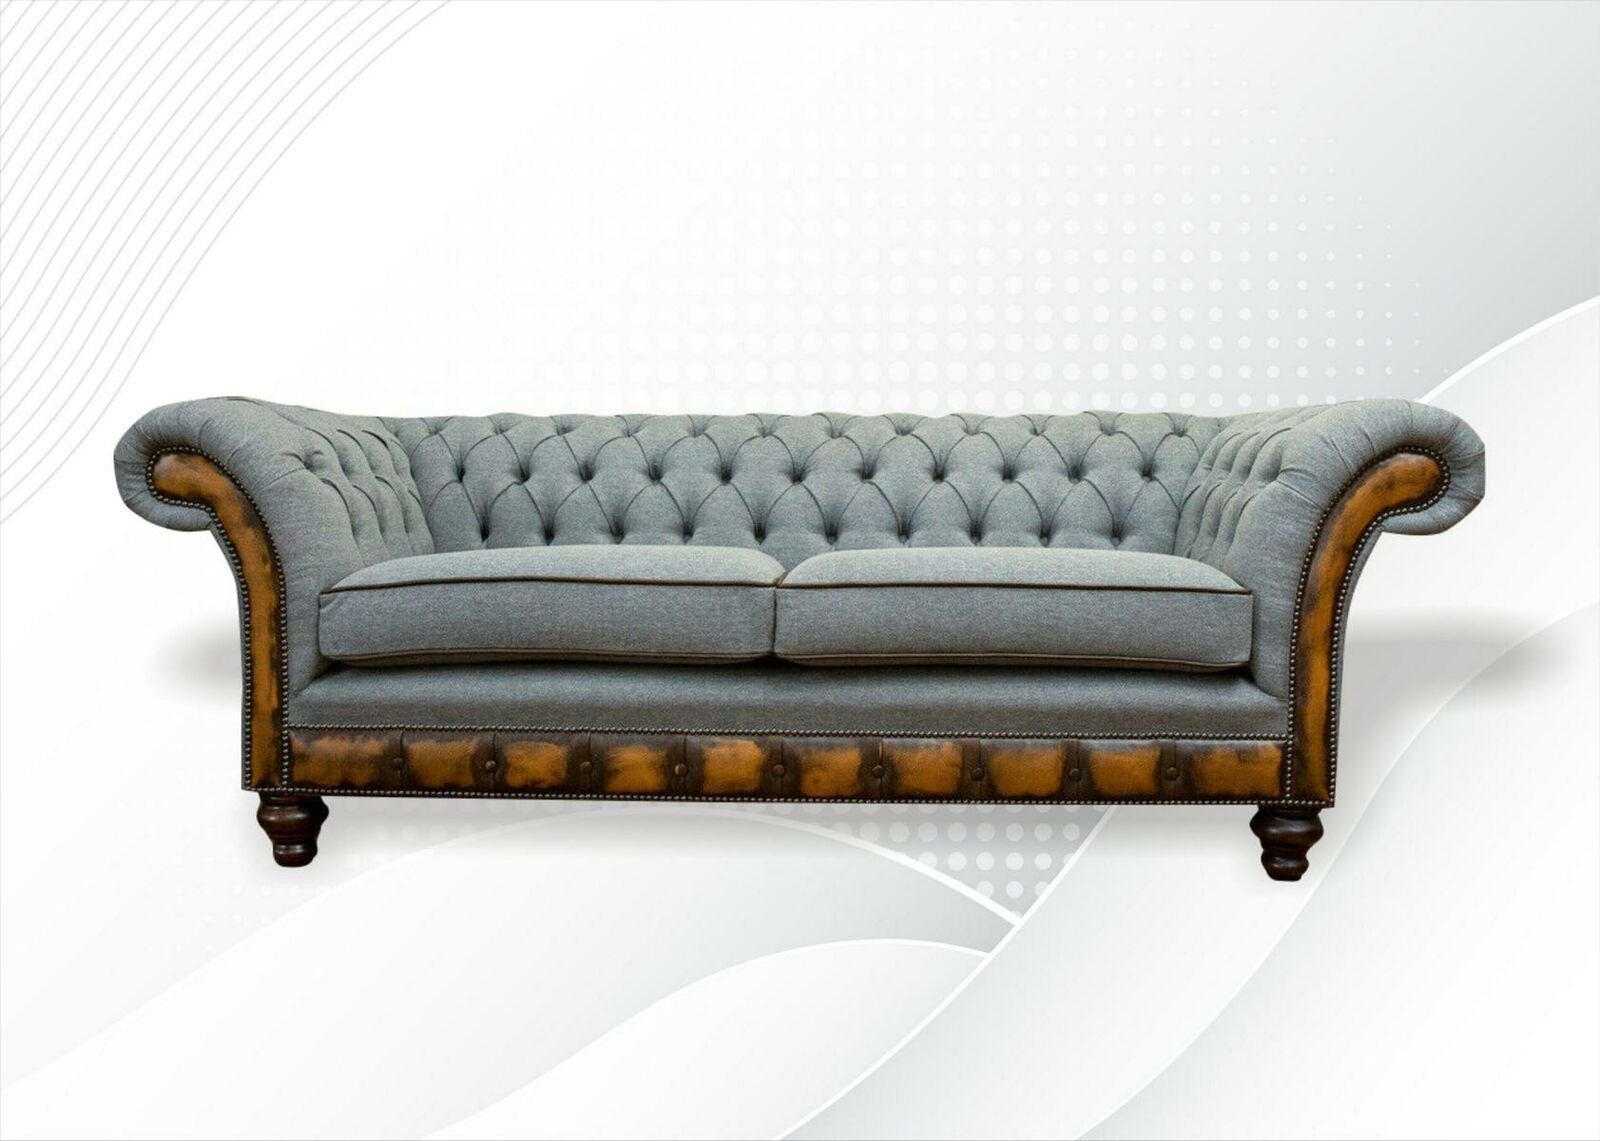 JVmoebel Chesterfield-Sofa Luxus Grauer Chesterfield Dreisitzer Modernes Design Neu, Made in Europe